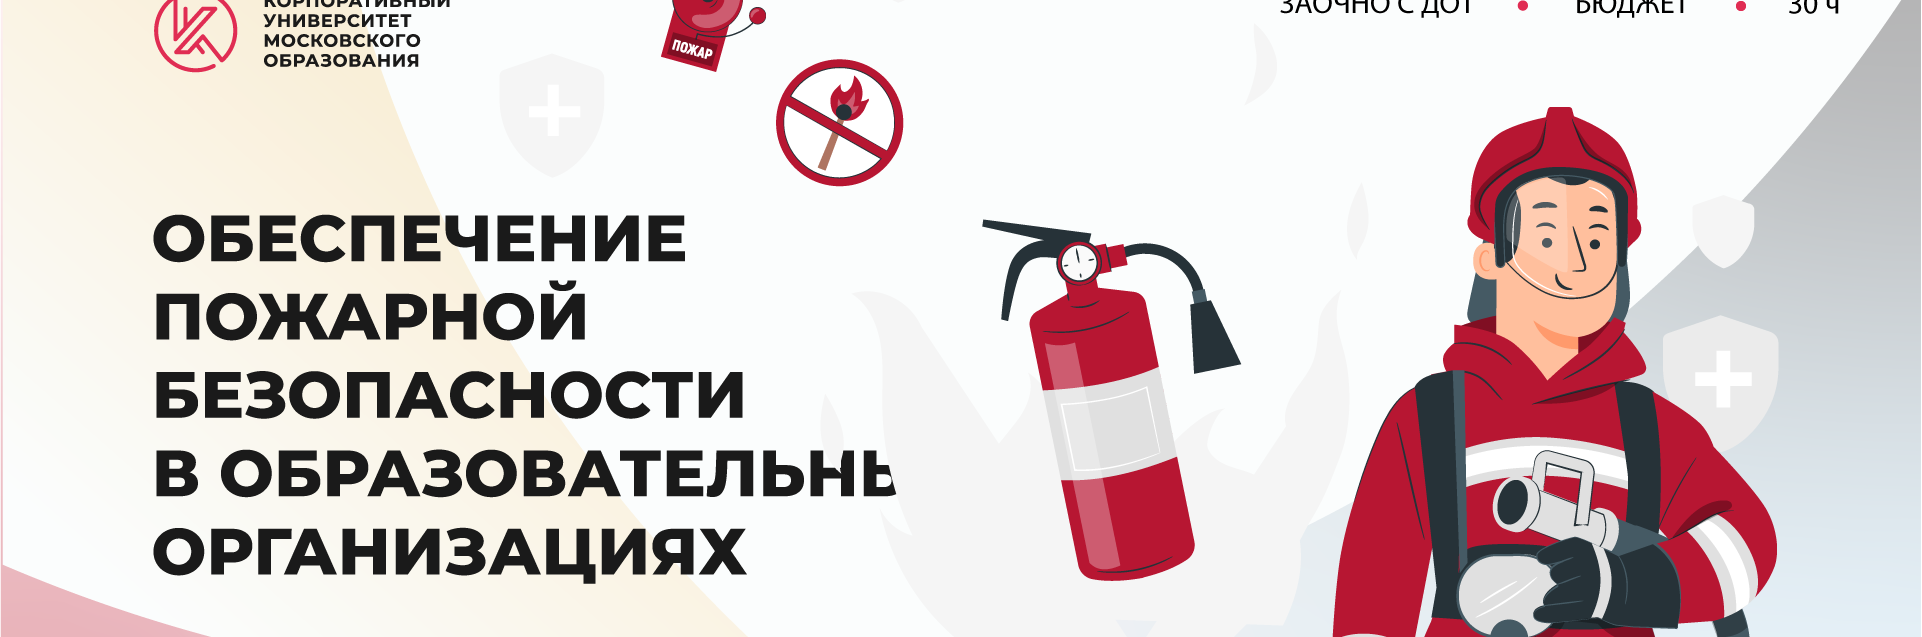 ППК_24_узкий пожарная безопасность